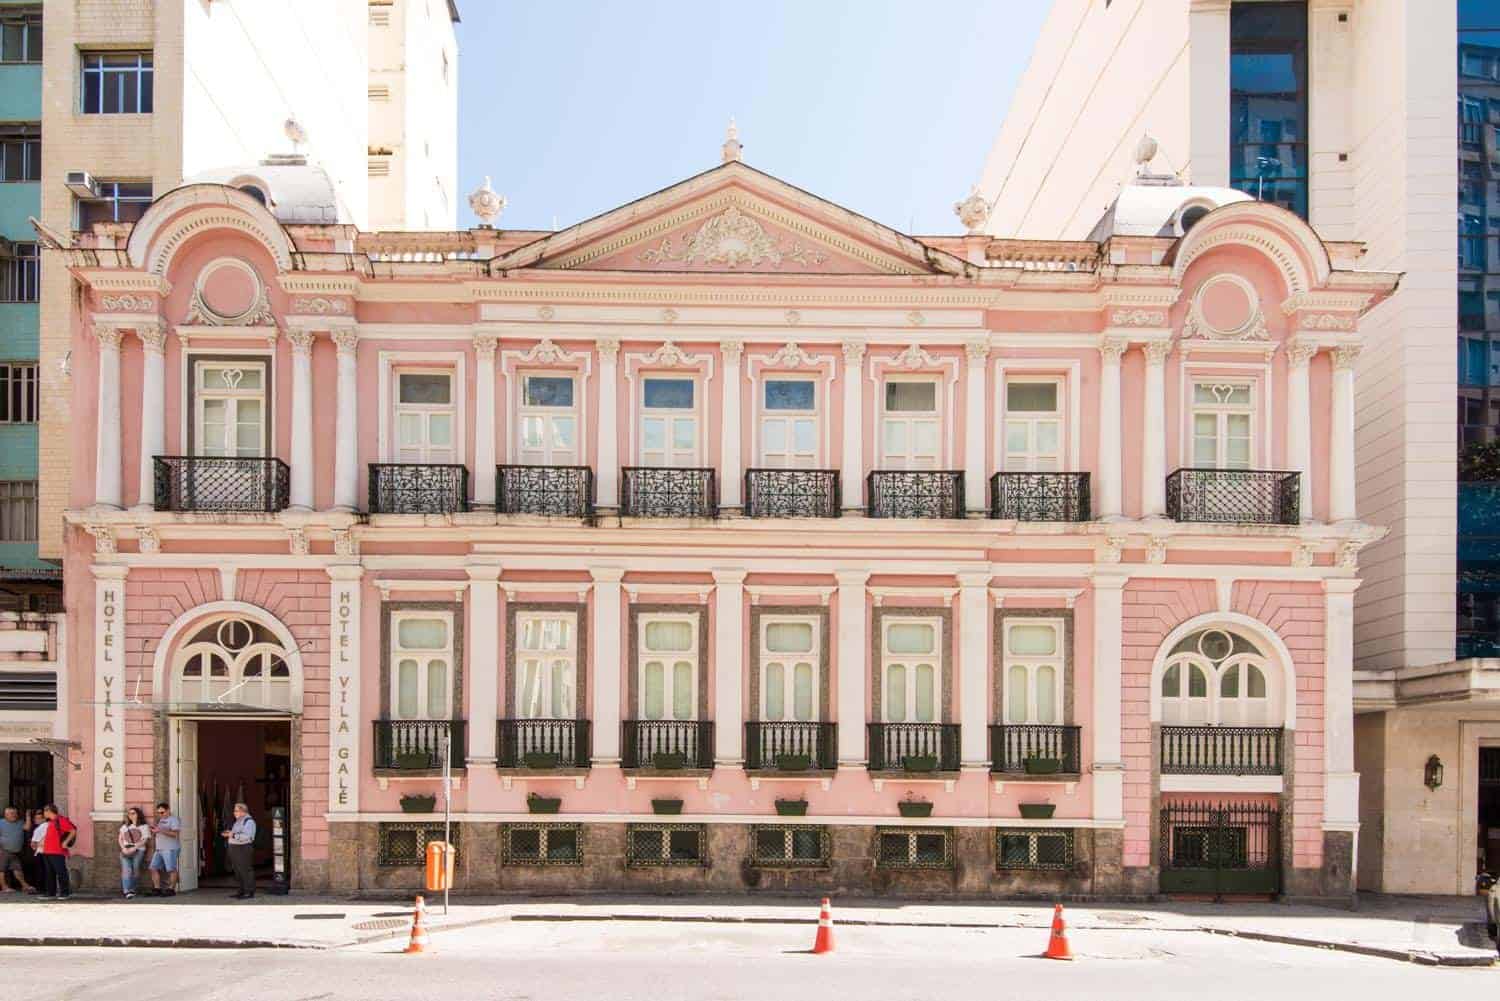 Vila Galé Rio de Janeiro - a polished 19th-century palace